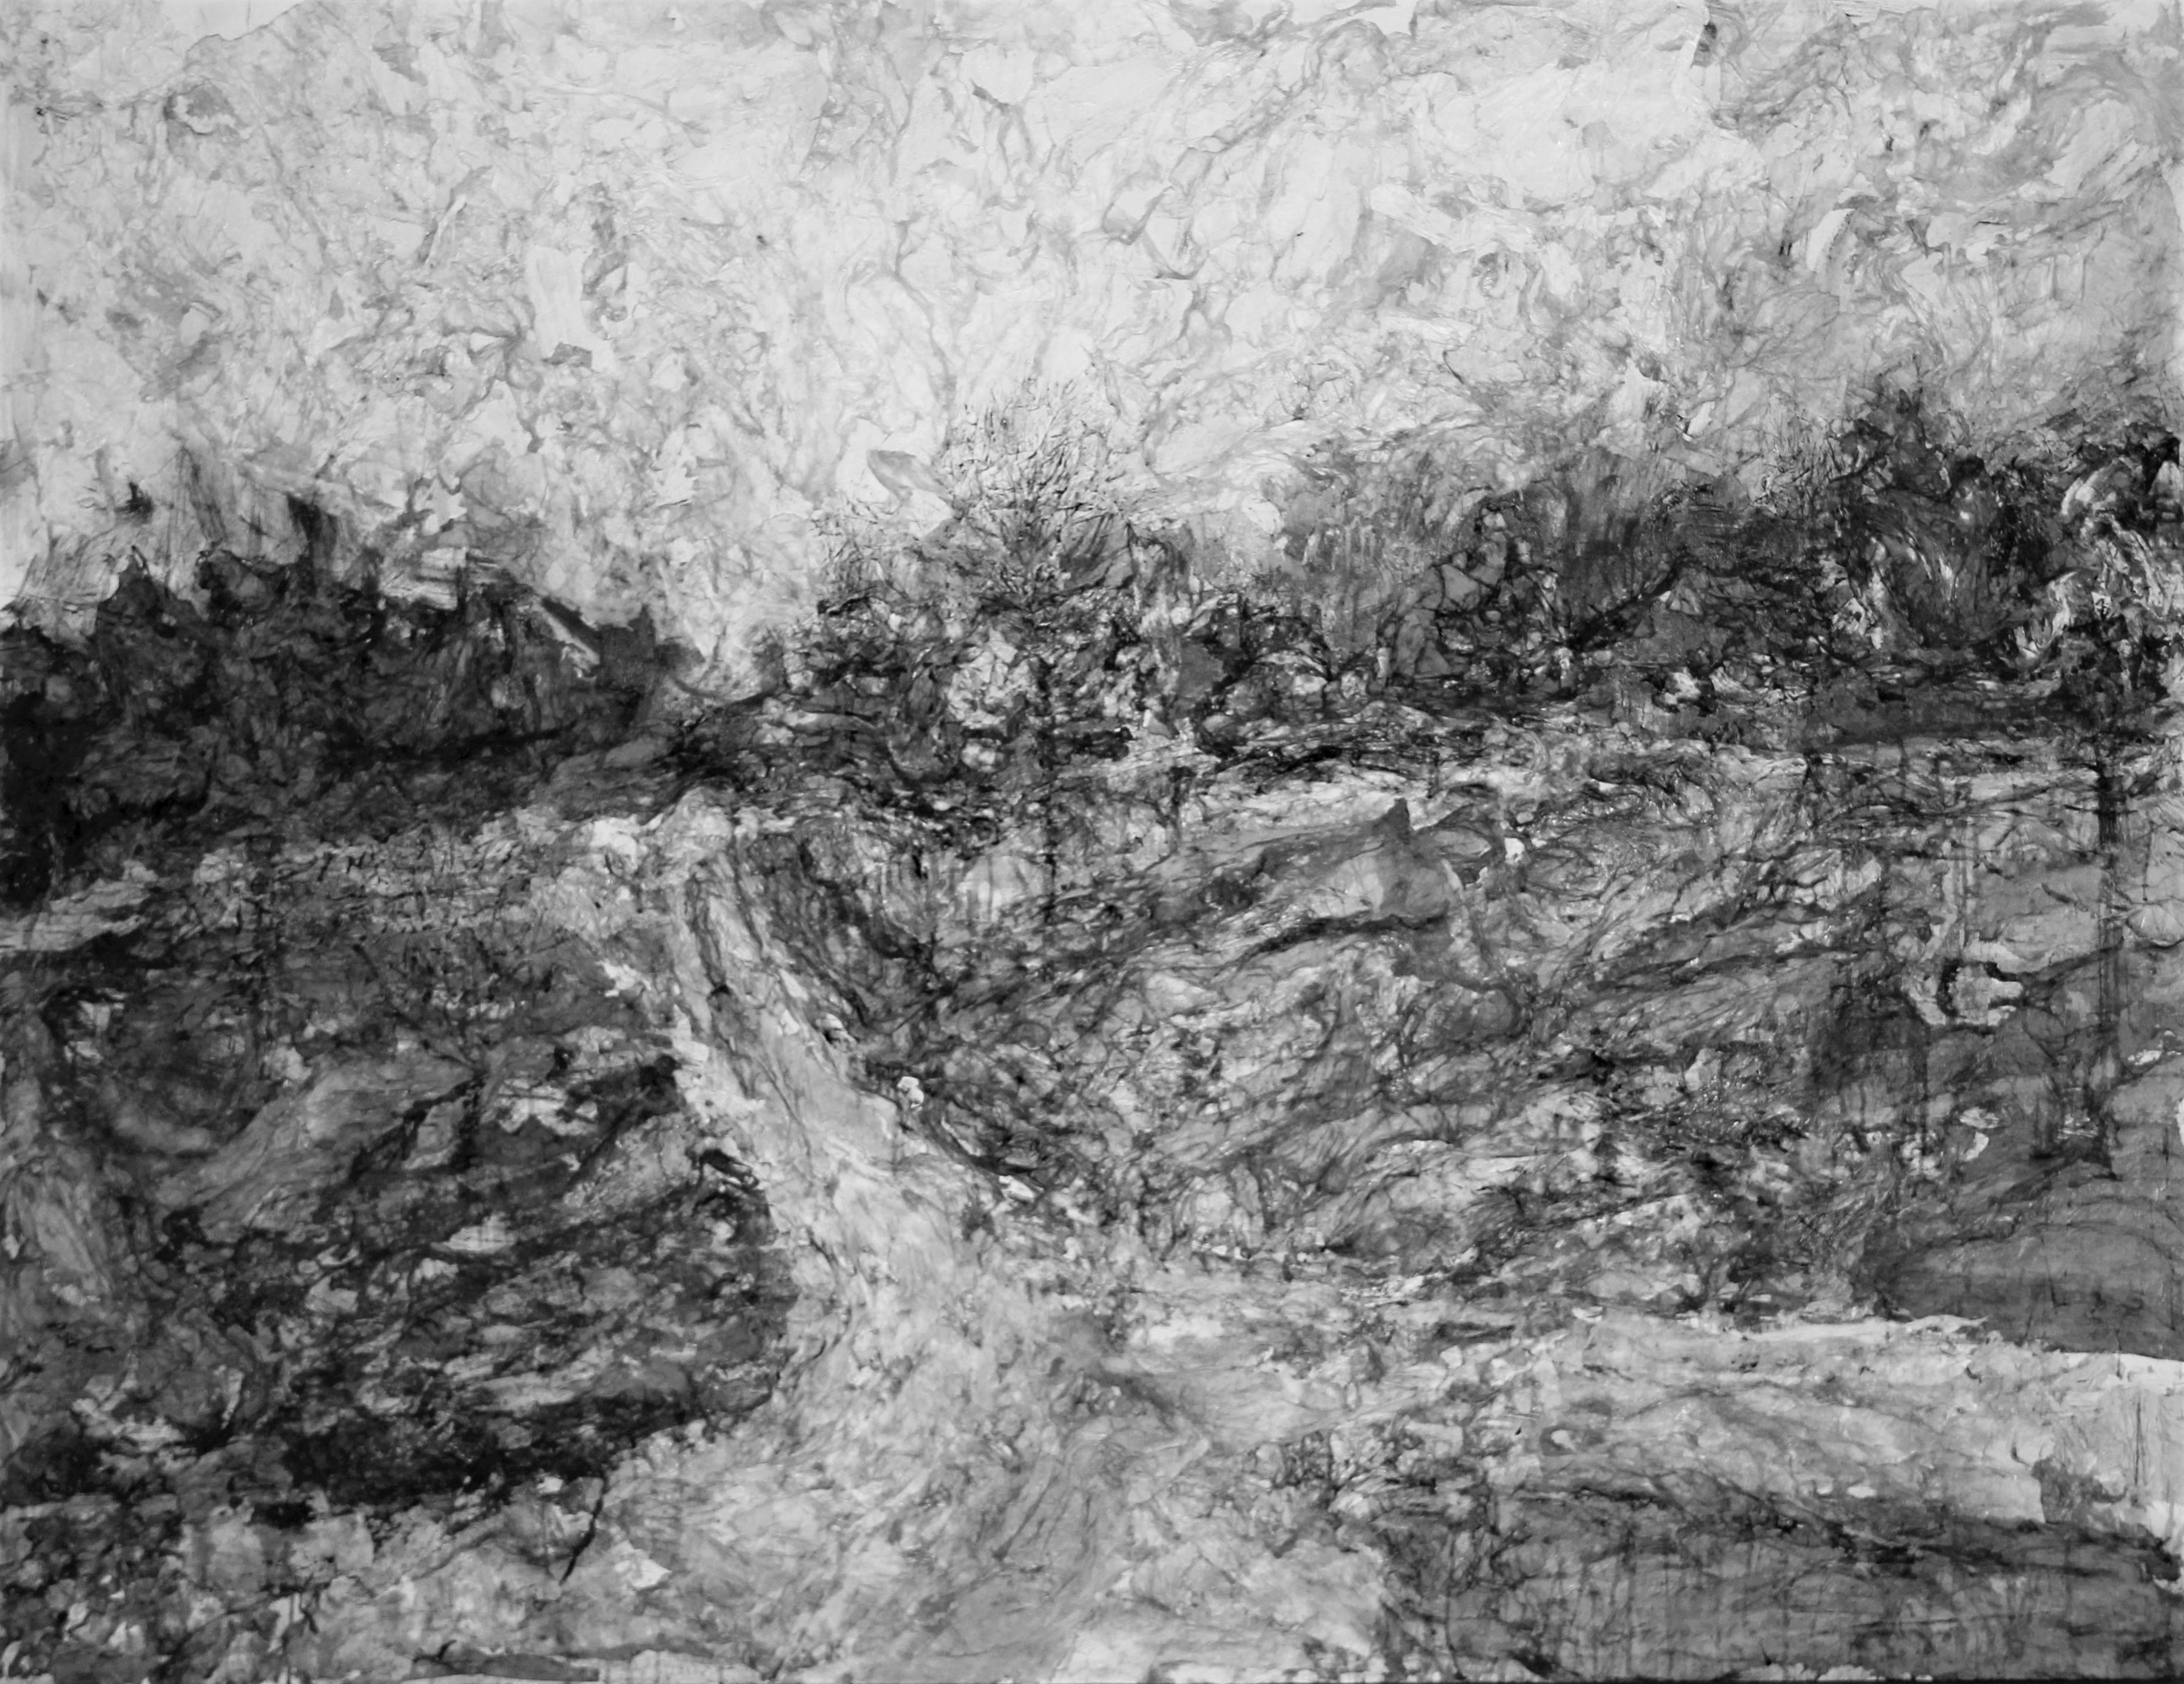 AsyaDodina SlavaPolishchuk Landscape Painting – Road 1, monochrome Landschaft, Schwarz-Weiß und Grau